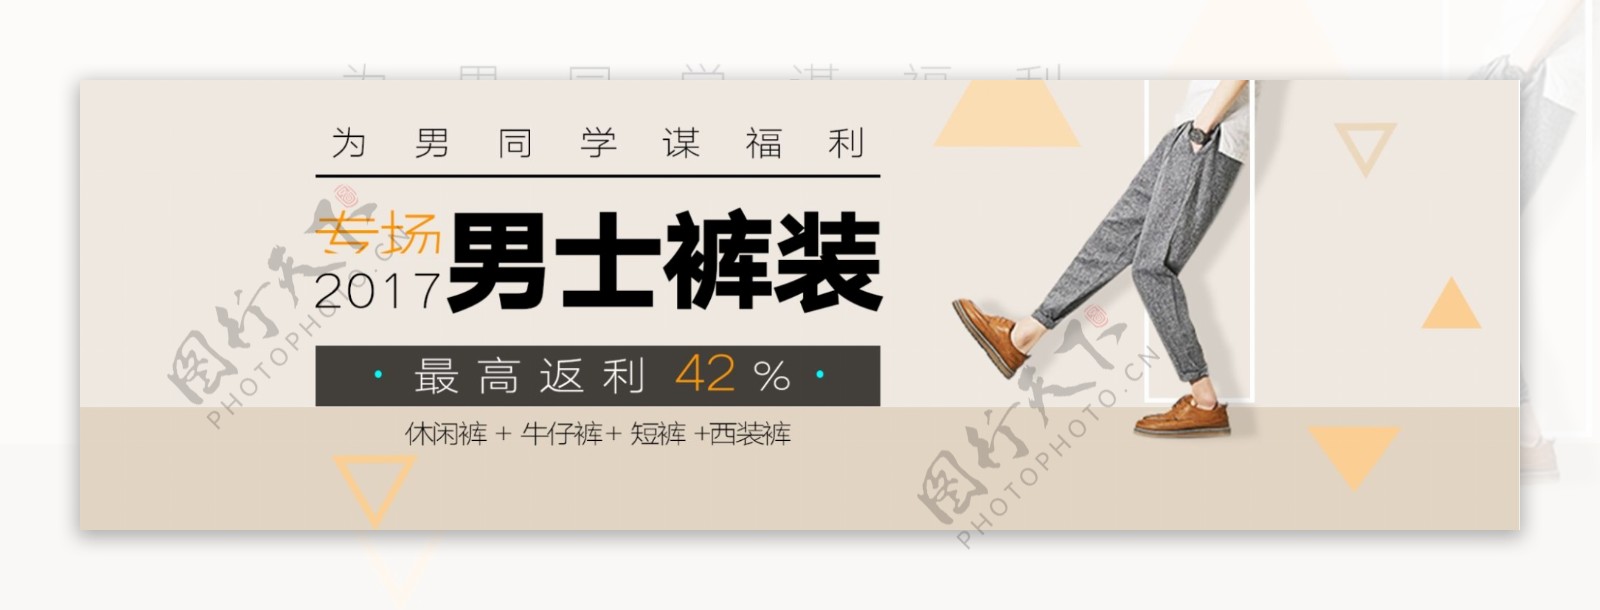 男裤banner淘宝电商海报